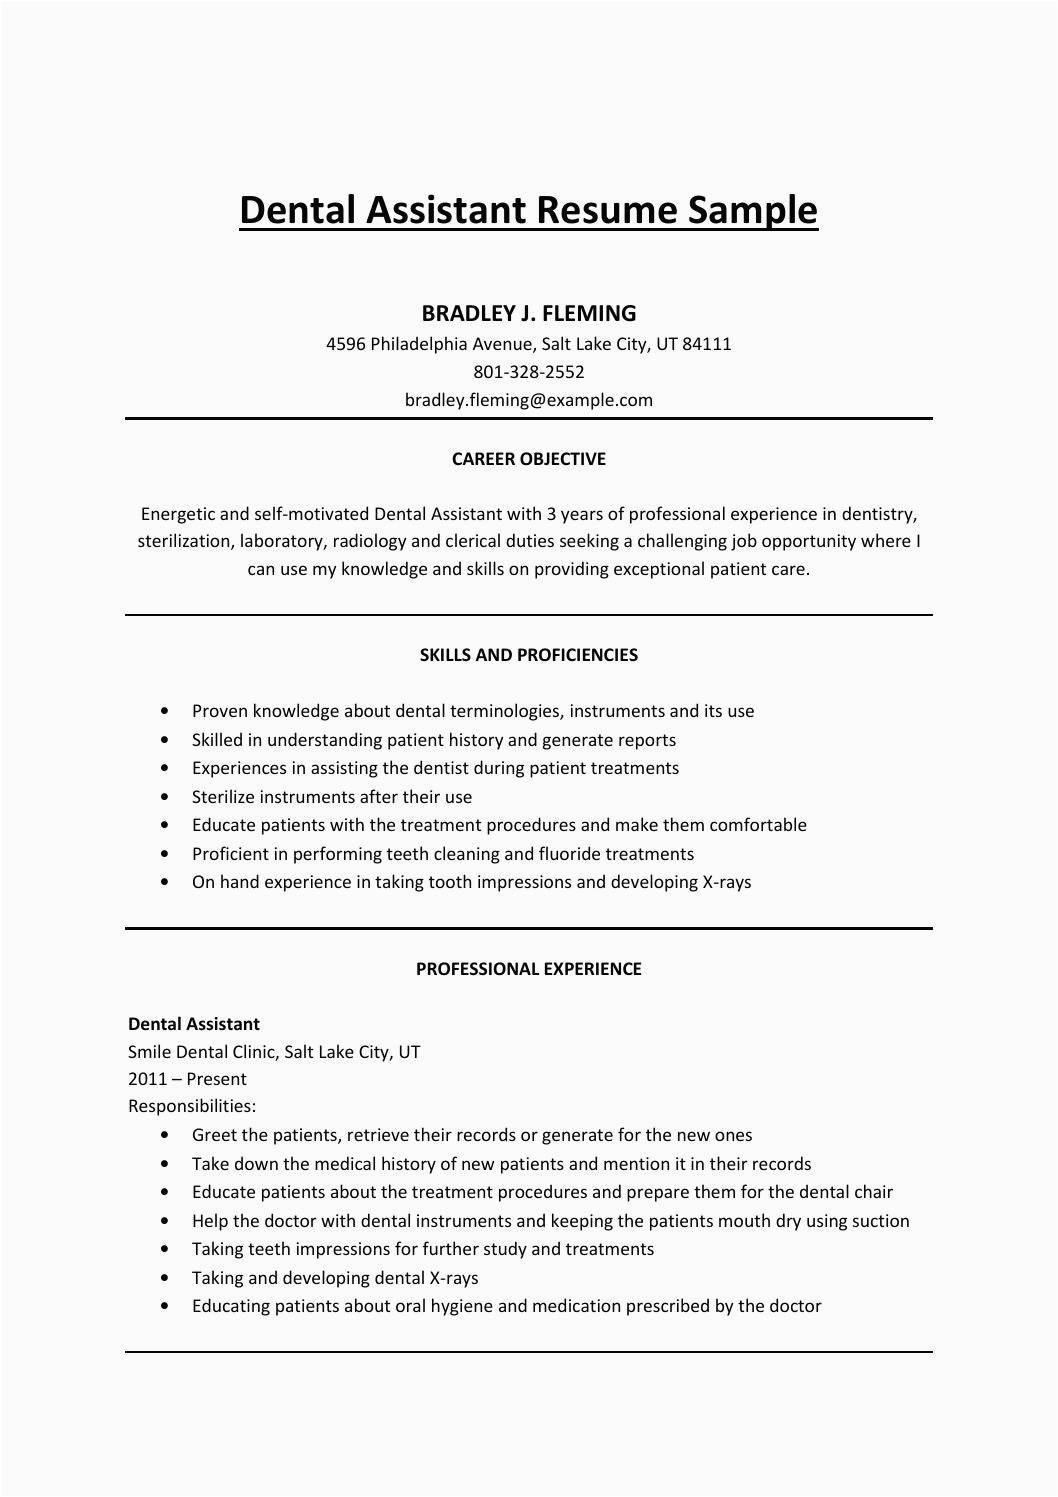 Sample Resume Objectives for Dental assistant Dental assistant Resume Sample by Mark Stone issuu